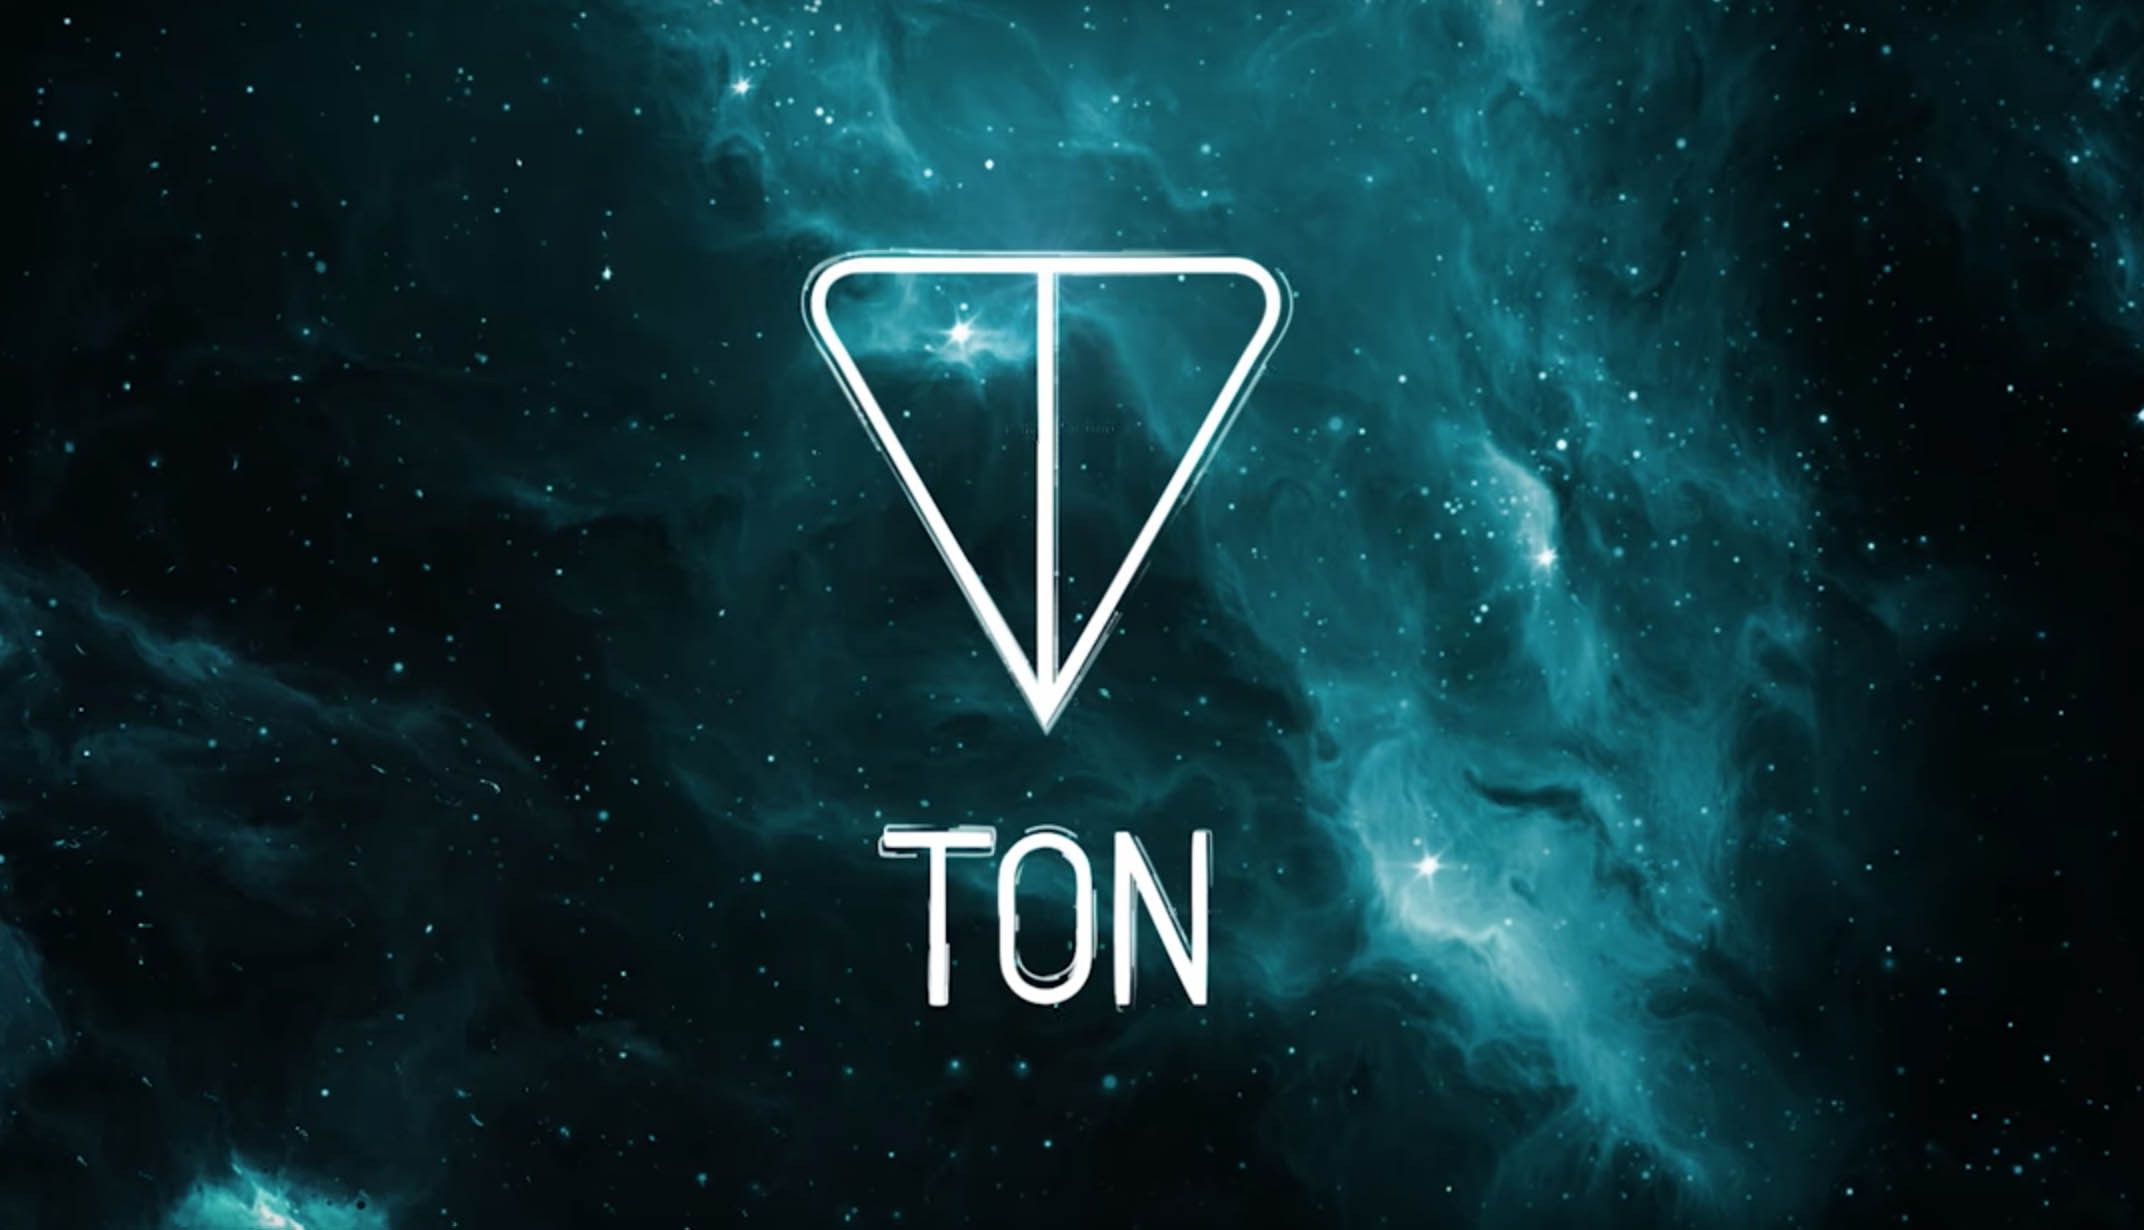 The open network ton. Ton. Ton логотип. Криптовалюты ton. Ton Telegram.